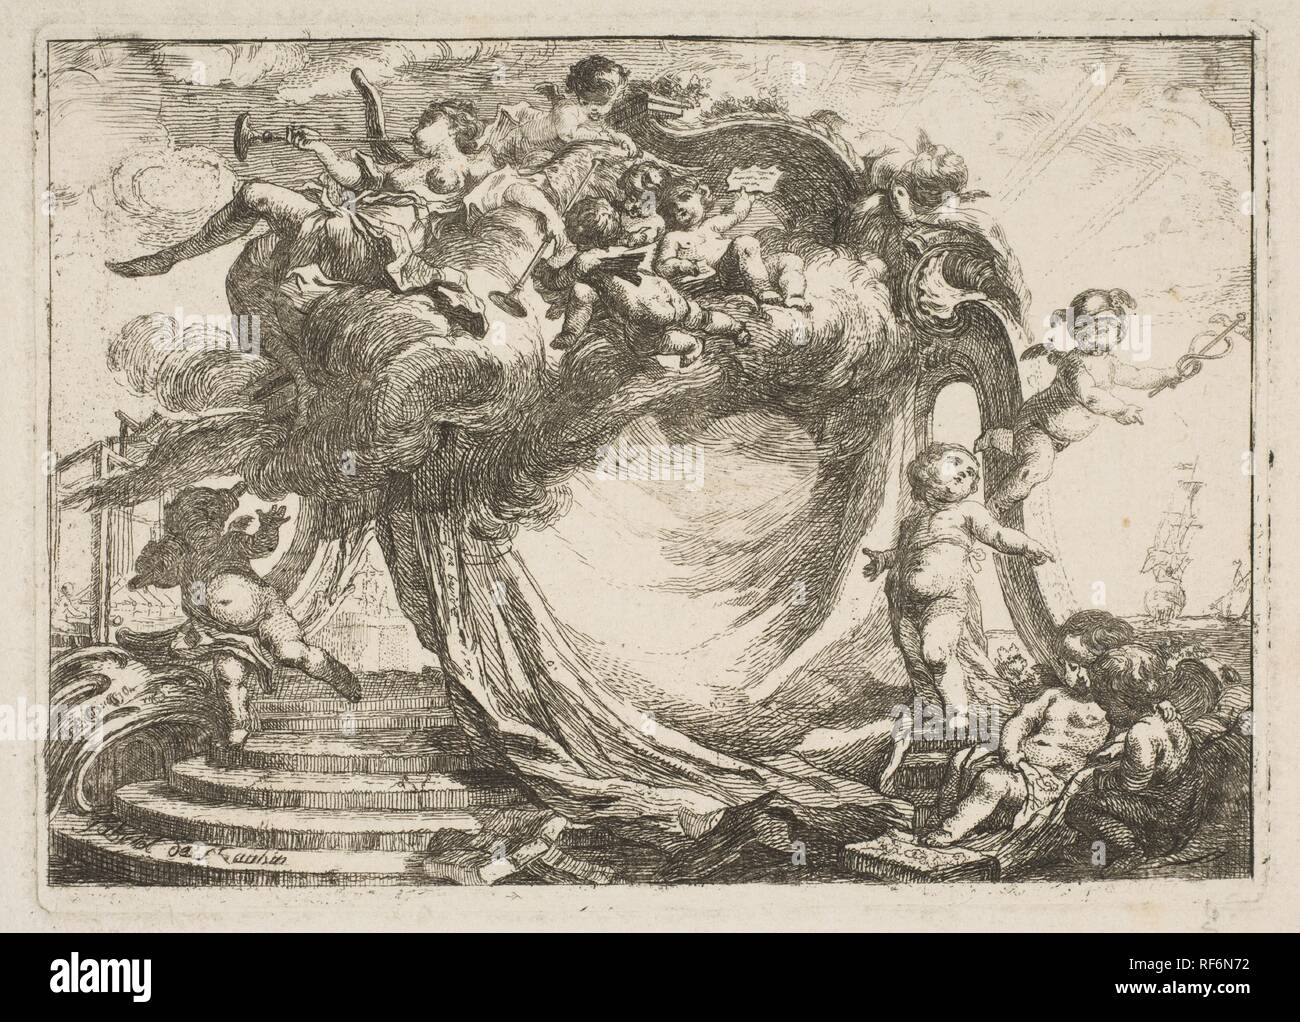 Vignette pour une adresse. Artist: Gabriel de Saint-Aubin (French, Paris 1724-1780 Paris). Dimensions: sheet: 5 5/16 x 7 3/16 in. (13.5 x 18.2 cm)  image: 3 5/16 x 4 3/4 in. (8.4 x 12 cm). Date: 1752. Museum: Metropolitan Museum of Art, New York, USA. Stock Photo